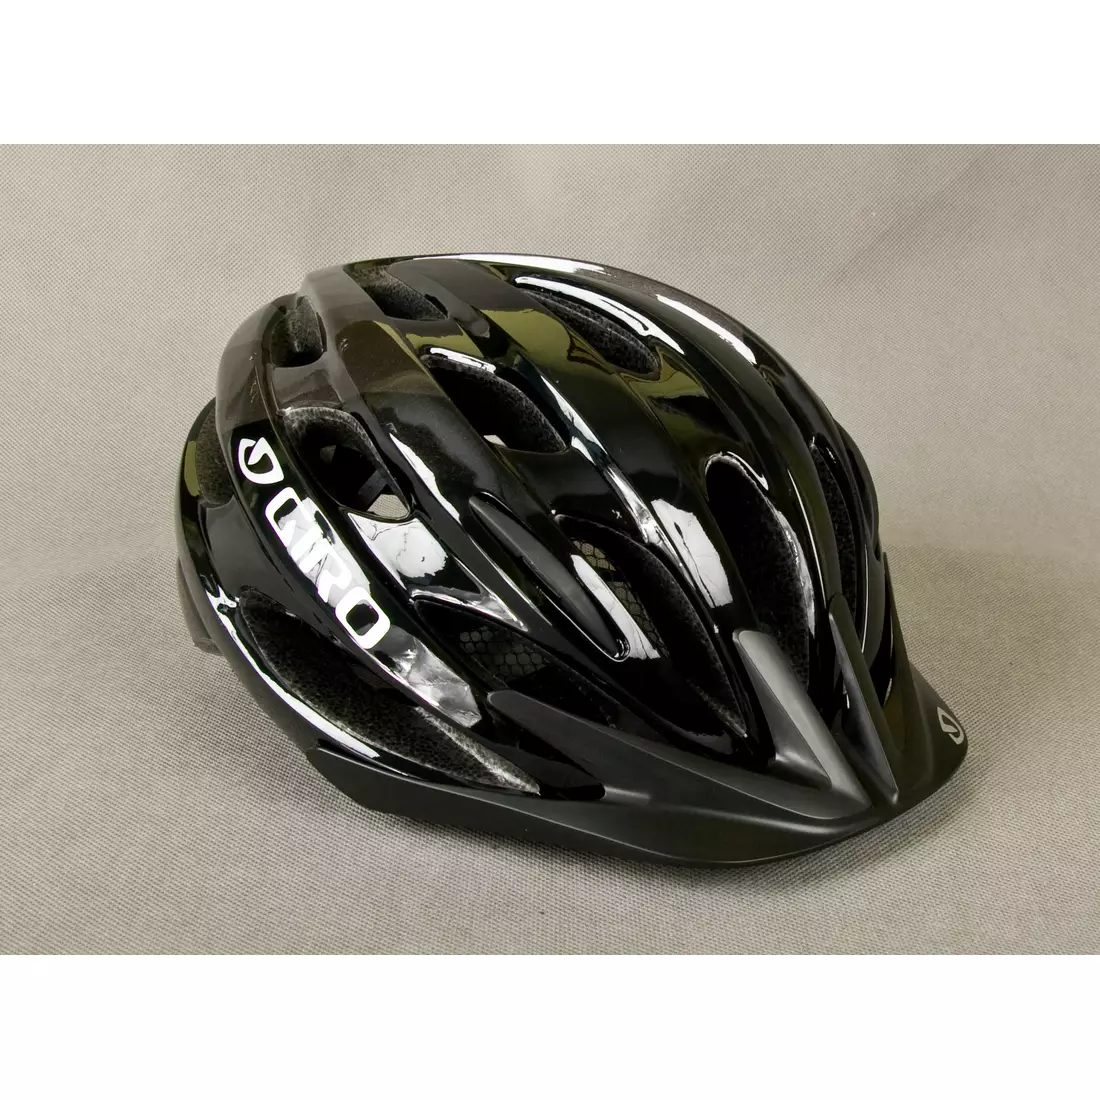 GIRO bicycle helmet BISHOP black